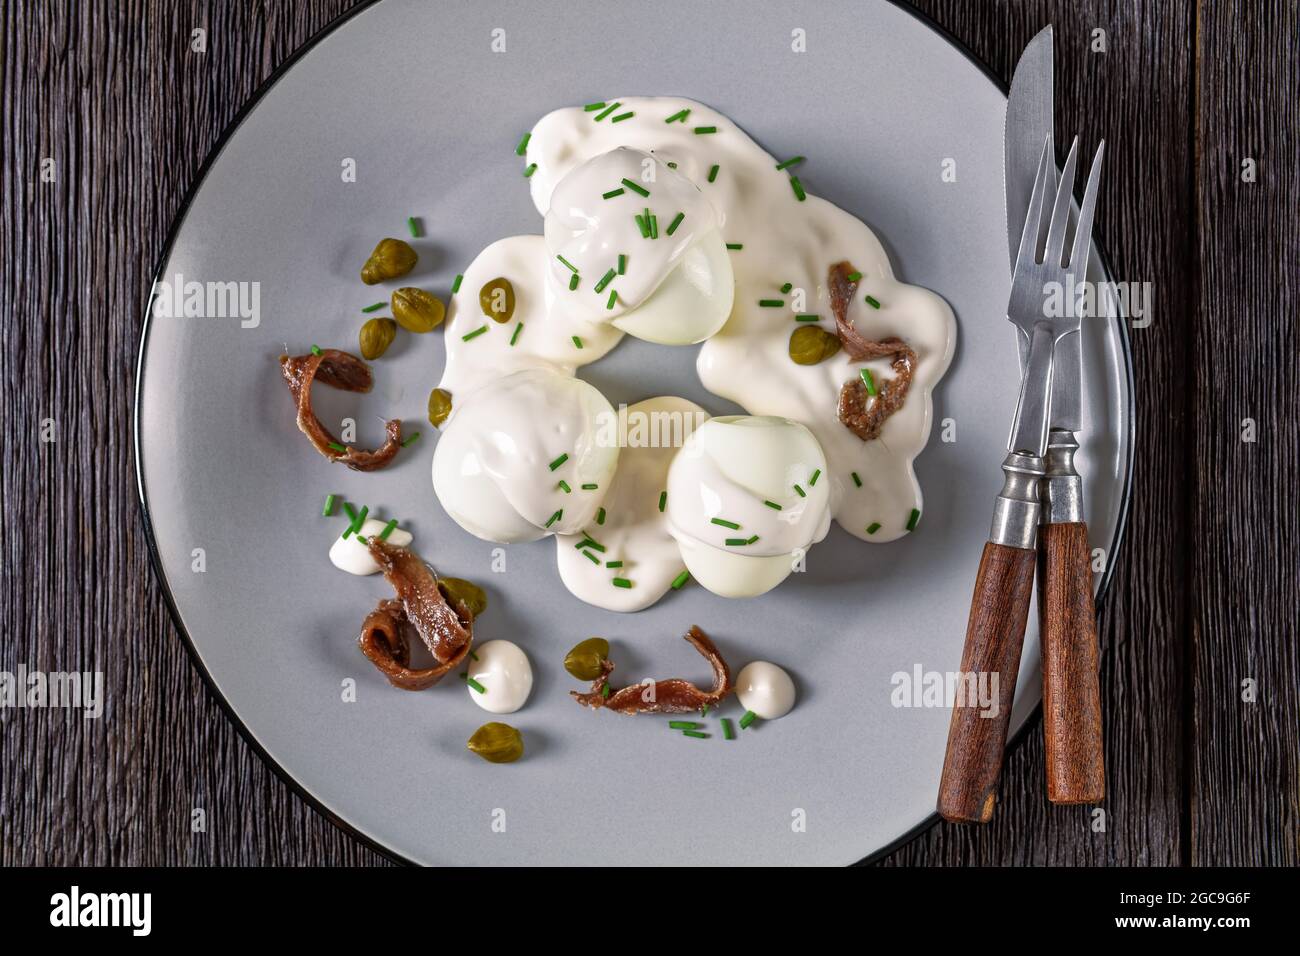 Oeuf-Mayonnaise, hart gekochte Eier, bedeckt mit einer Sauce aus Mayonnaise, garniert mit Schnittlauch, Kapern und Sardellenfilet, französischer Cuis Stockfoto